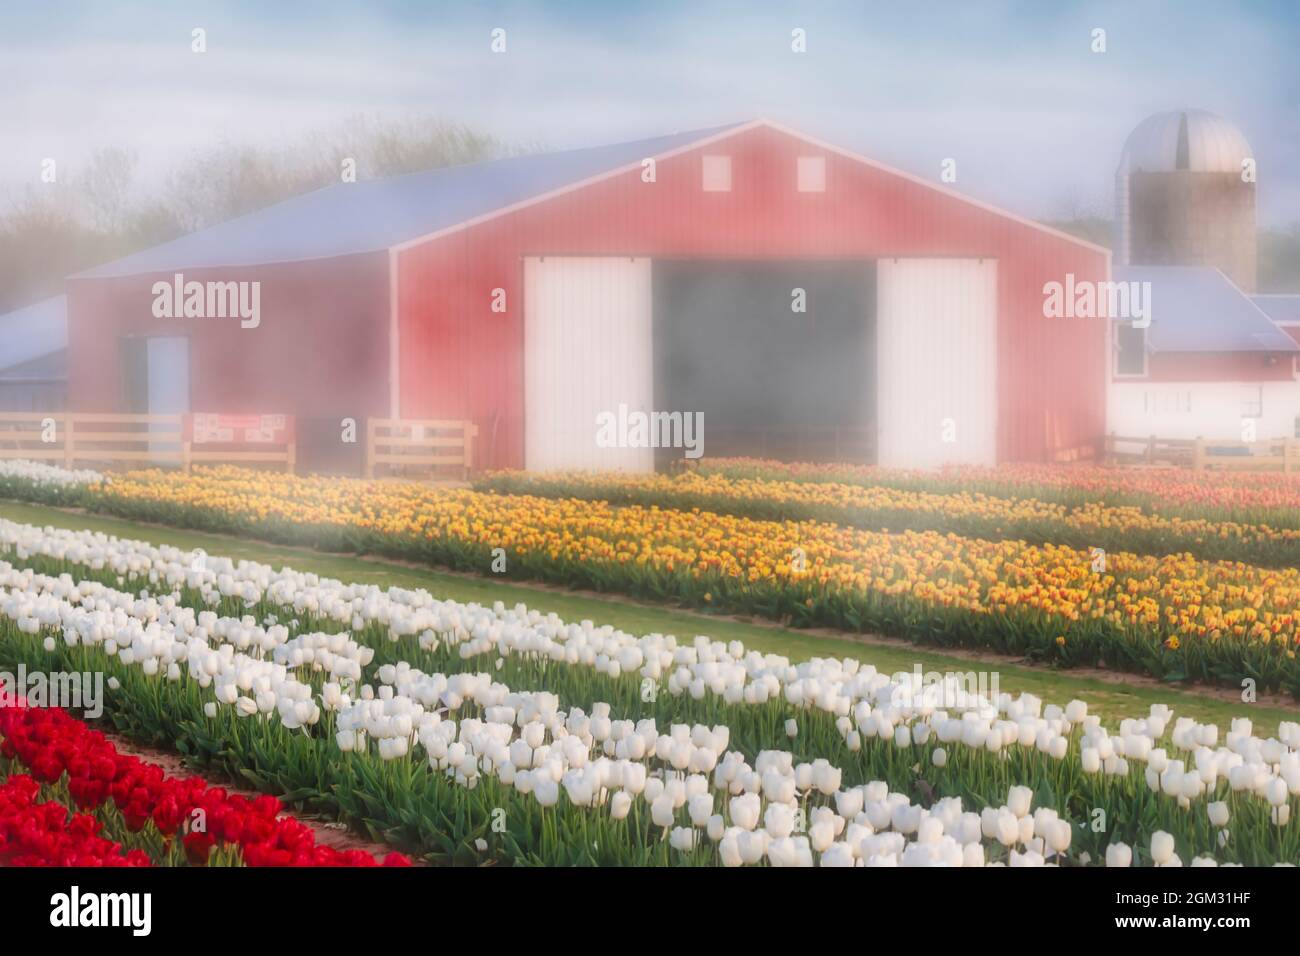 Tulpen, Nebel und Scheune - Tausende von schönen bunten Tulpen und Scheune auf dem Bauernhof. Erhältlich in Farbe sowie in einem Schwarz-Weiß-Druck. Anzeigen Stockfoto